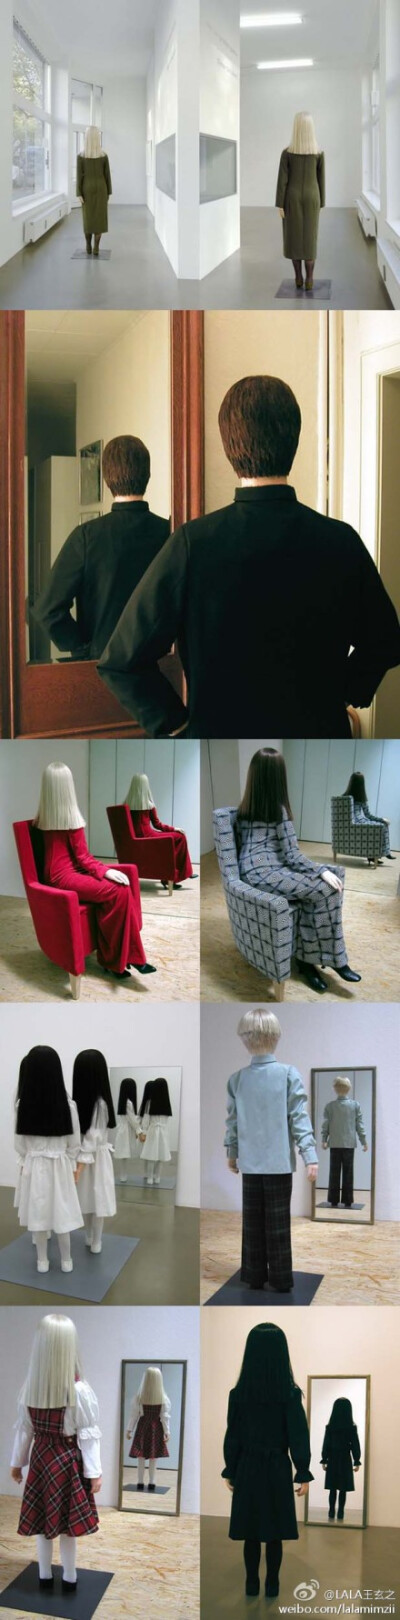 艺术家Simon Schubert制作了这种两面都一样的塑像，终于实景再现了Magritte超现实的绘画。这种奇妙的感官只有现场看一番才能体会。